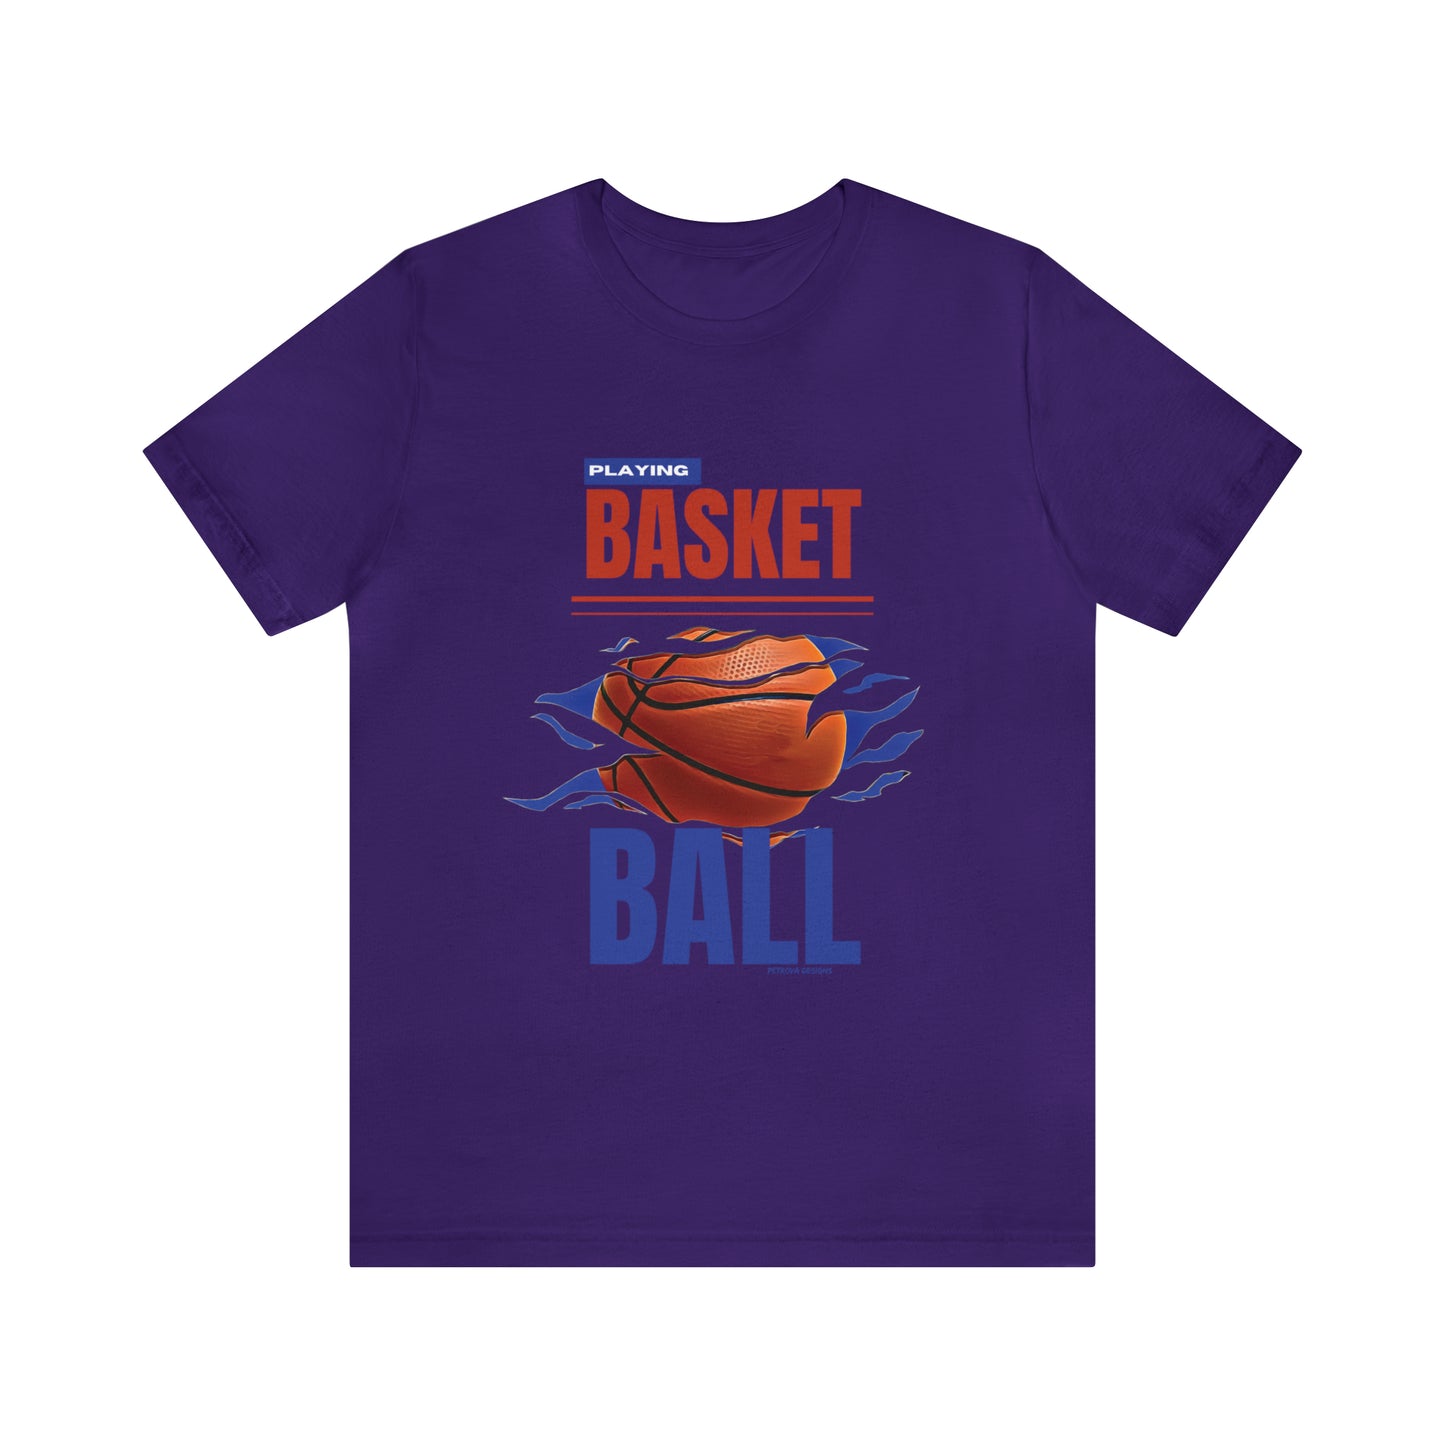 T-Shirt Tshirt Design Gift for Friend and Family Short Sleeved Shirt Hobby Aesthetic for Basketballer Petrova Designs